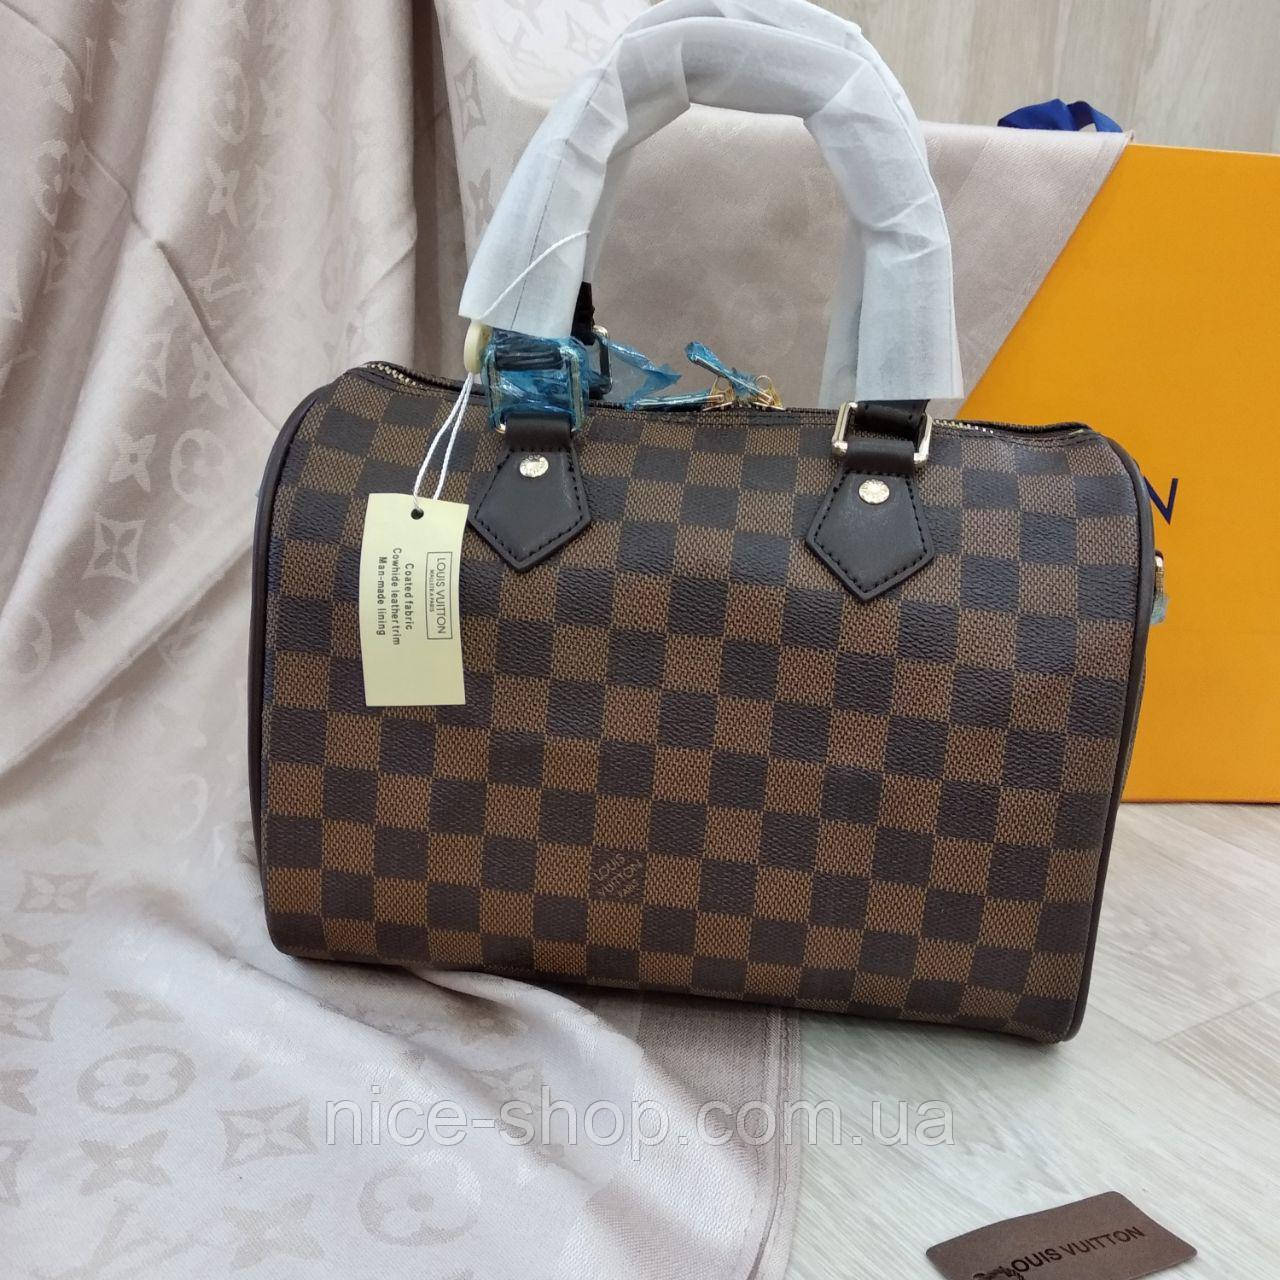 Сумка Louis Vuitton Speedy 25 см,коричневая шахматка: продажа, цена в Одессе. женские сумочки и ...